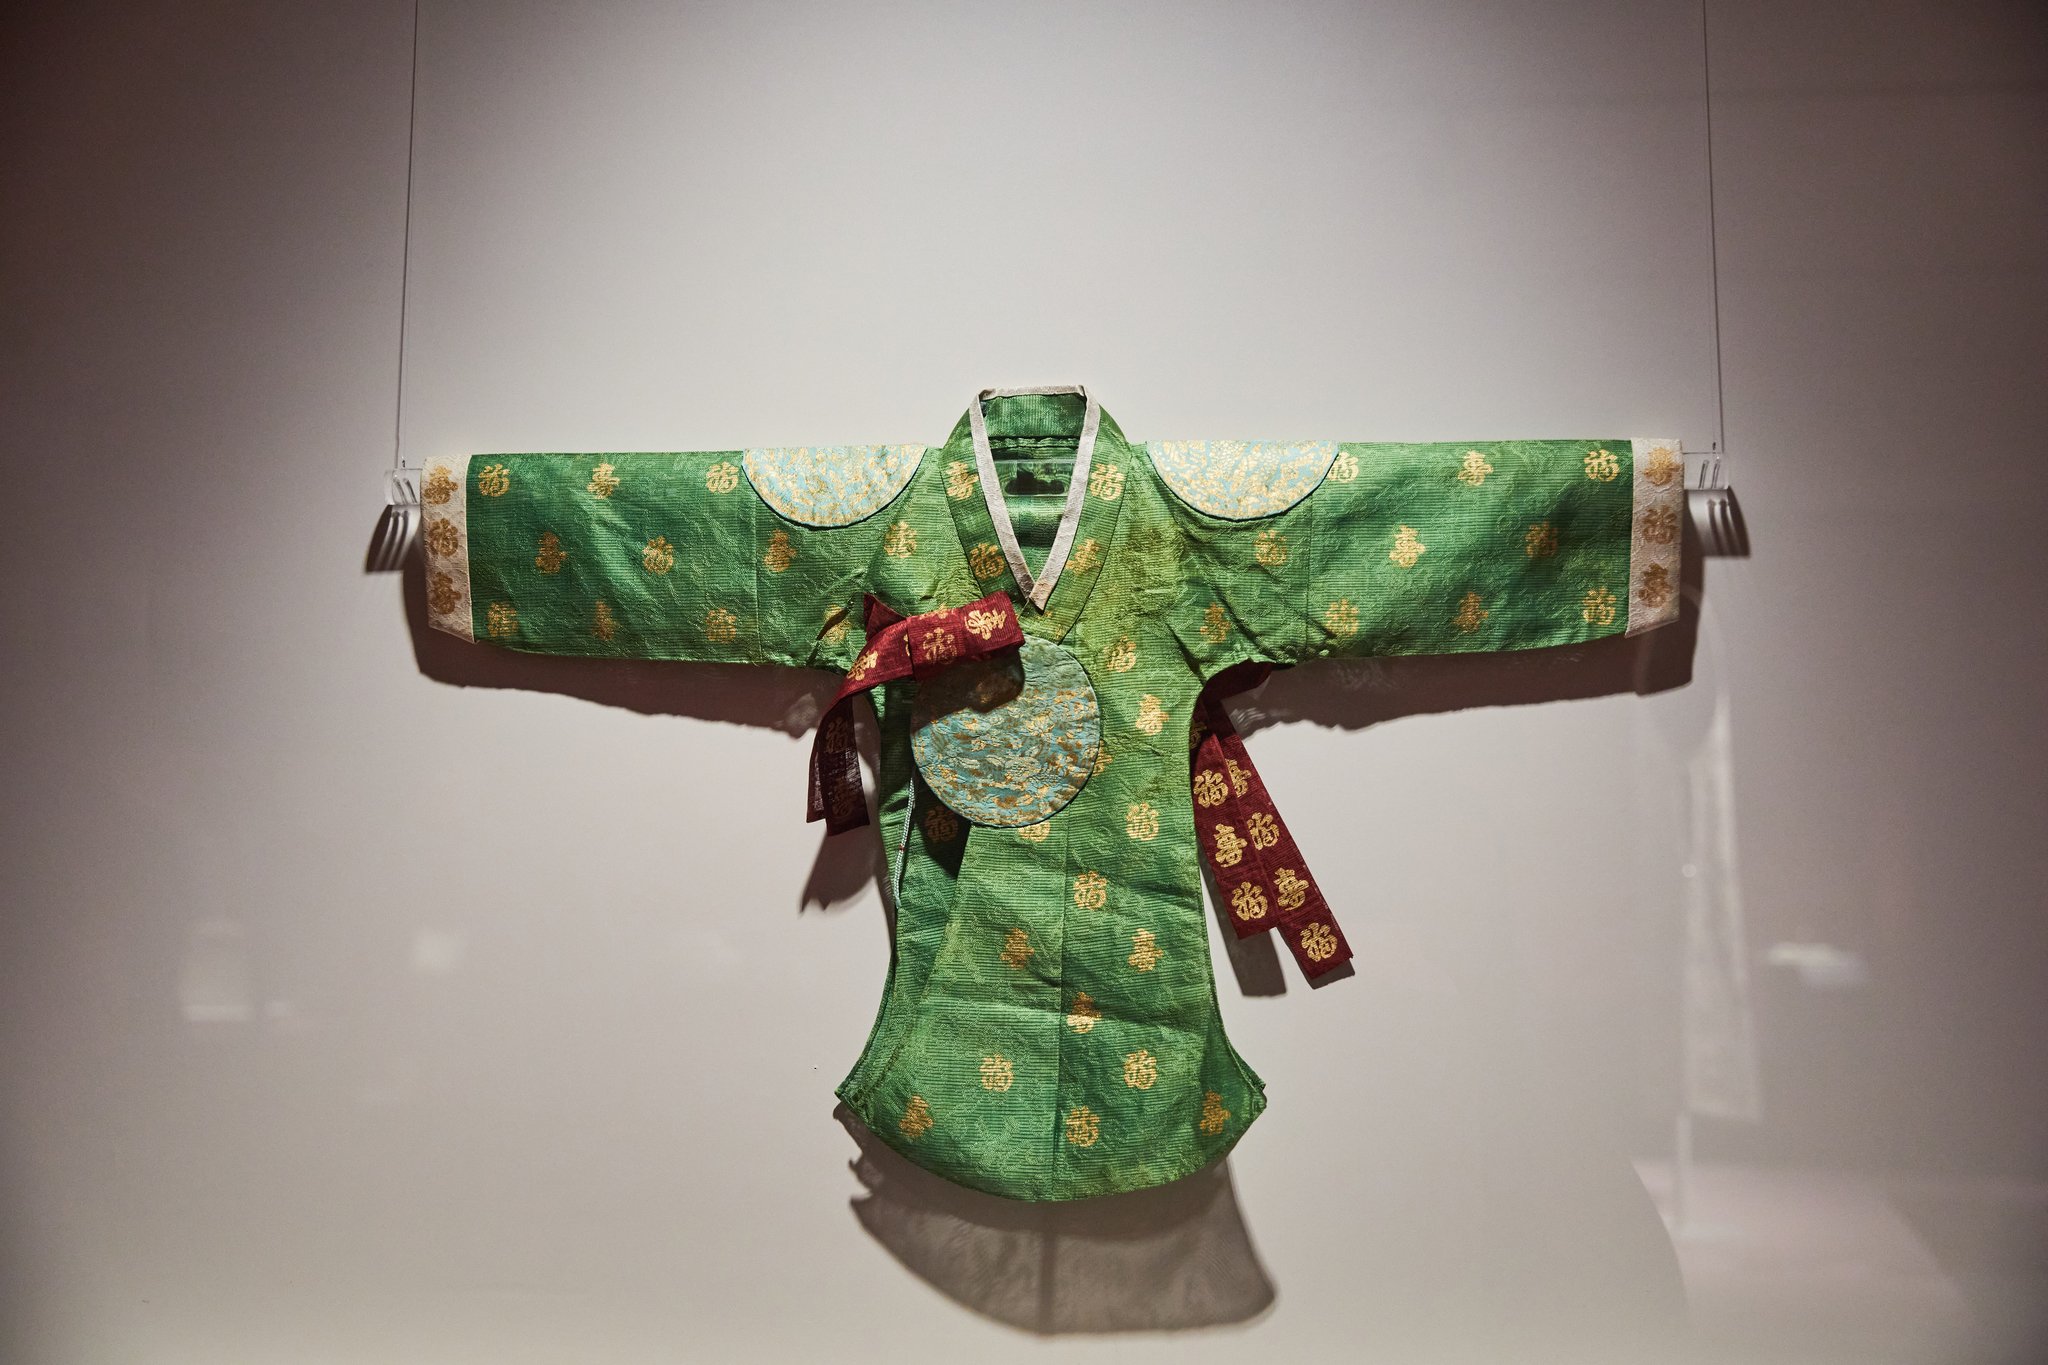 ‘덕혜옹주 당의와 스란치마’는 덕혜옹주가 일본에 머물던 당시 남긴 왕실 복식이자 당대 최고 수준의 복식 유물이라는 중요한 의의가 있다.